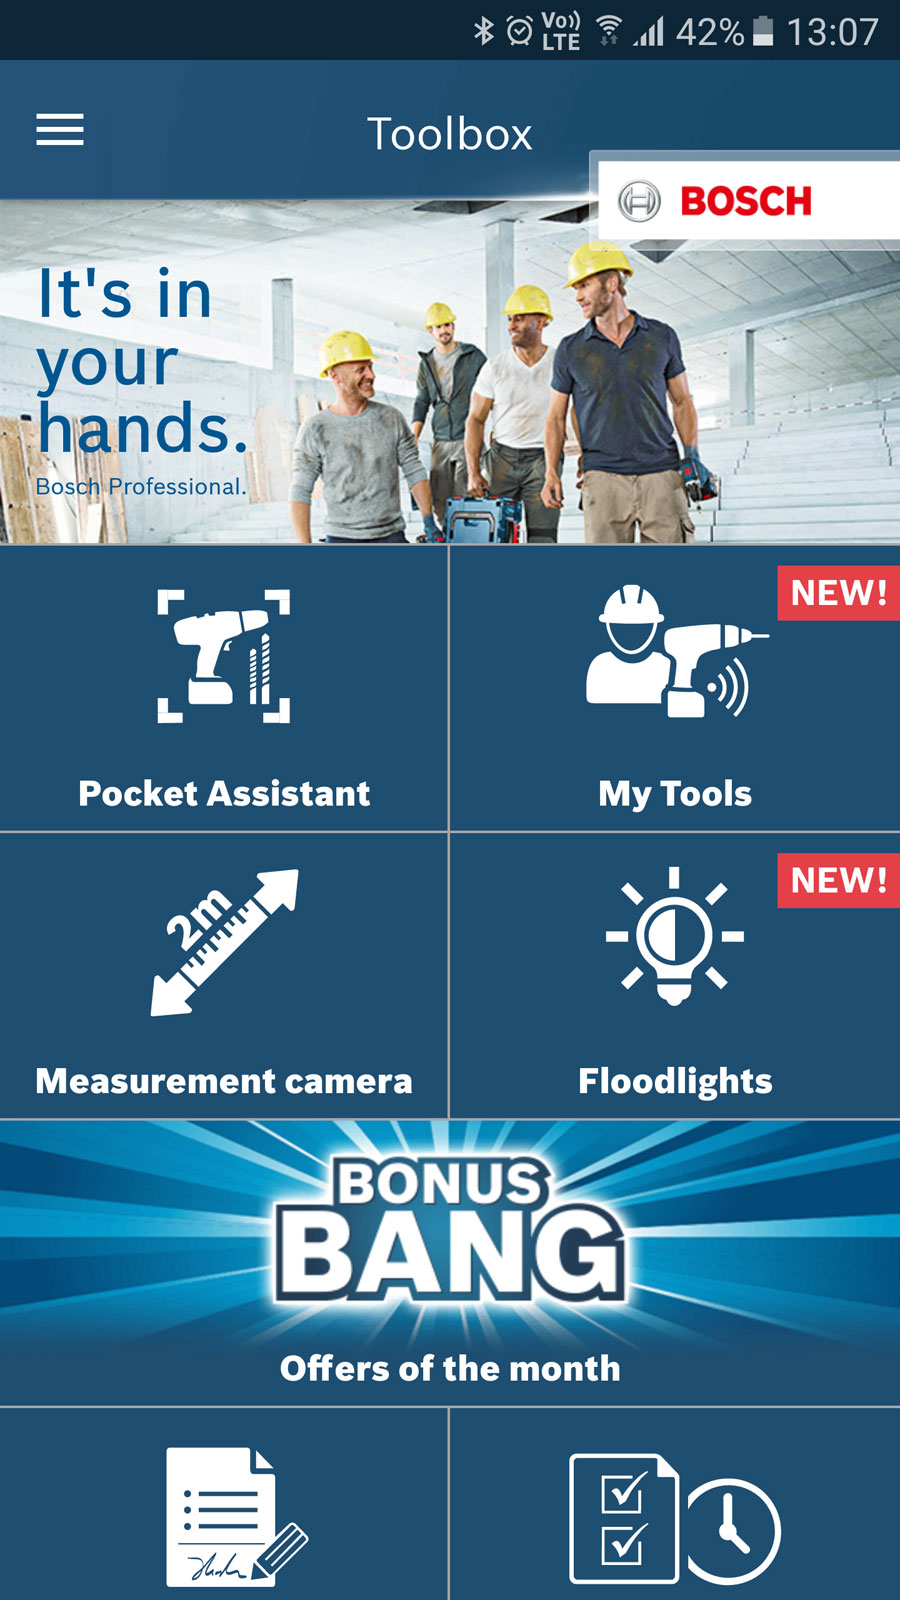 Bosch Toolbox app